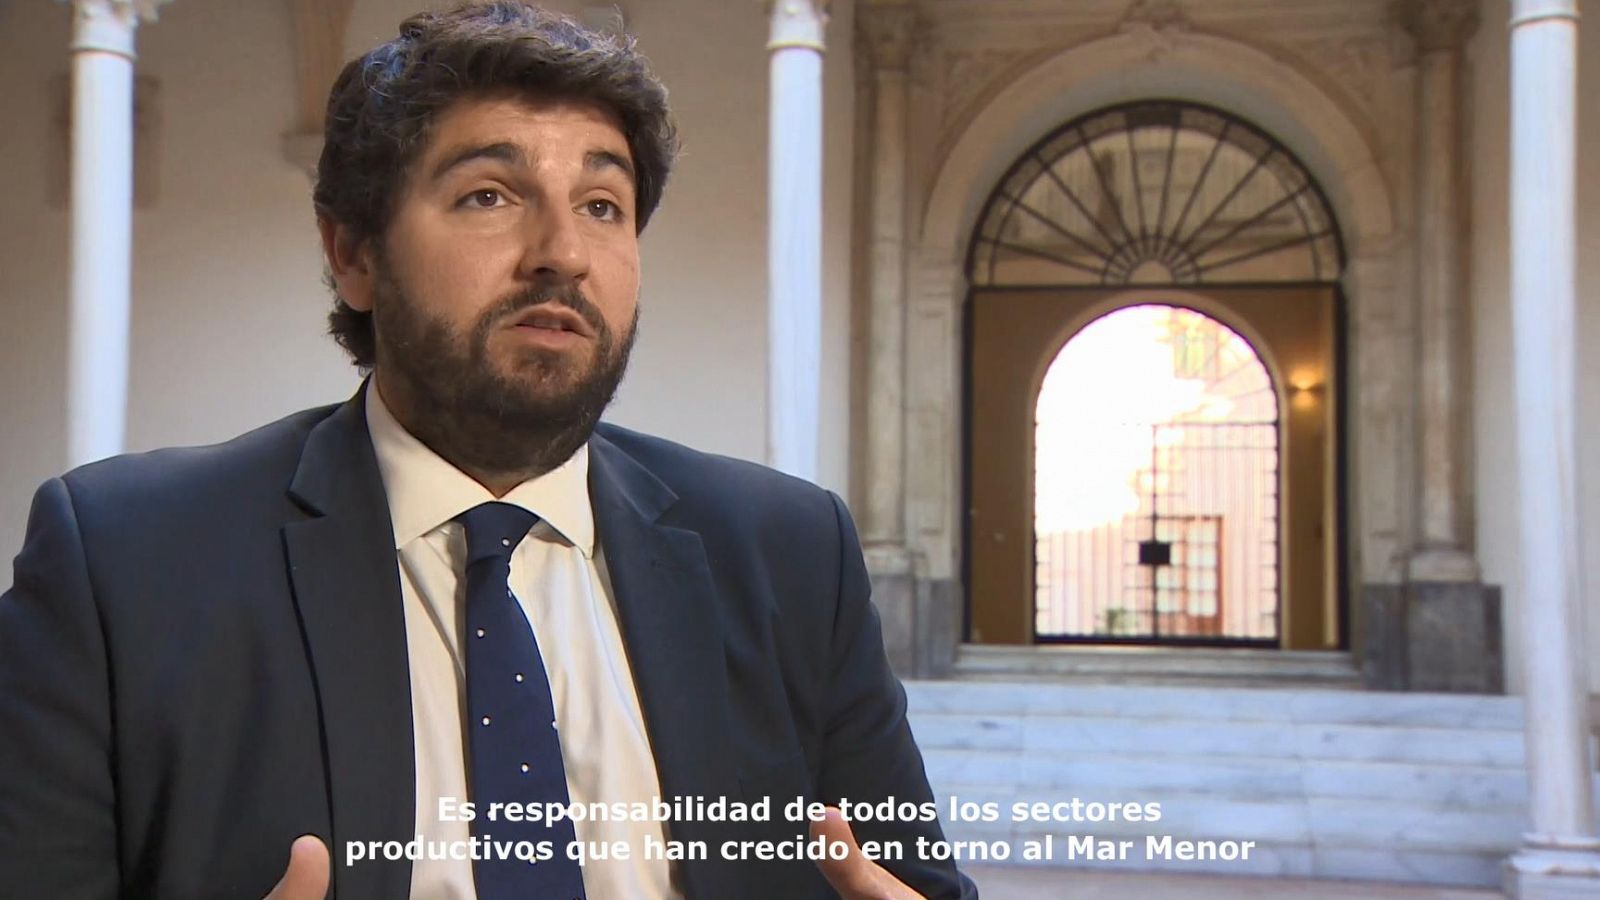 Presidente de la Región de Murcia: "El Mar Menor es responsabilidad de todos"